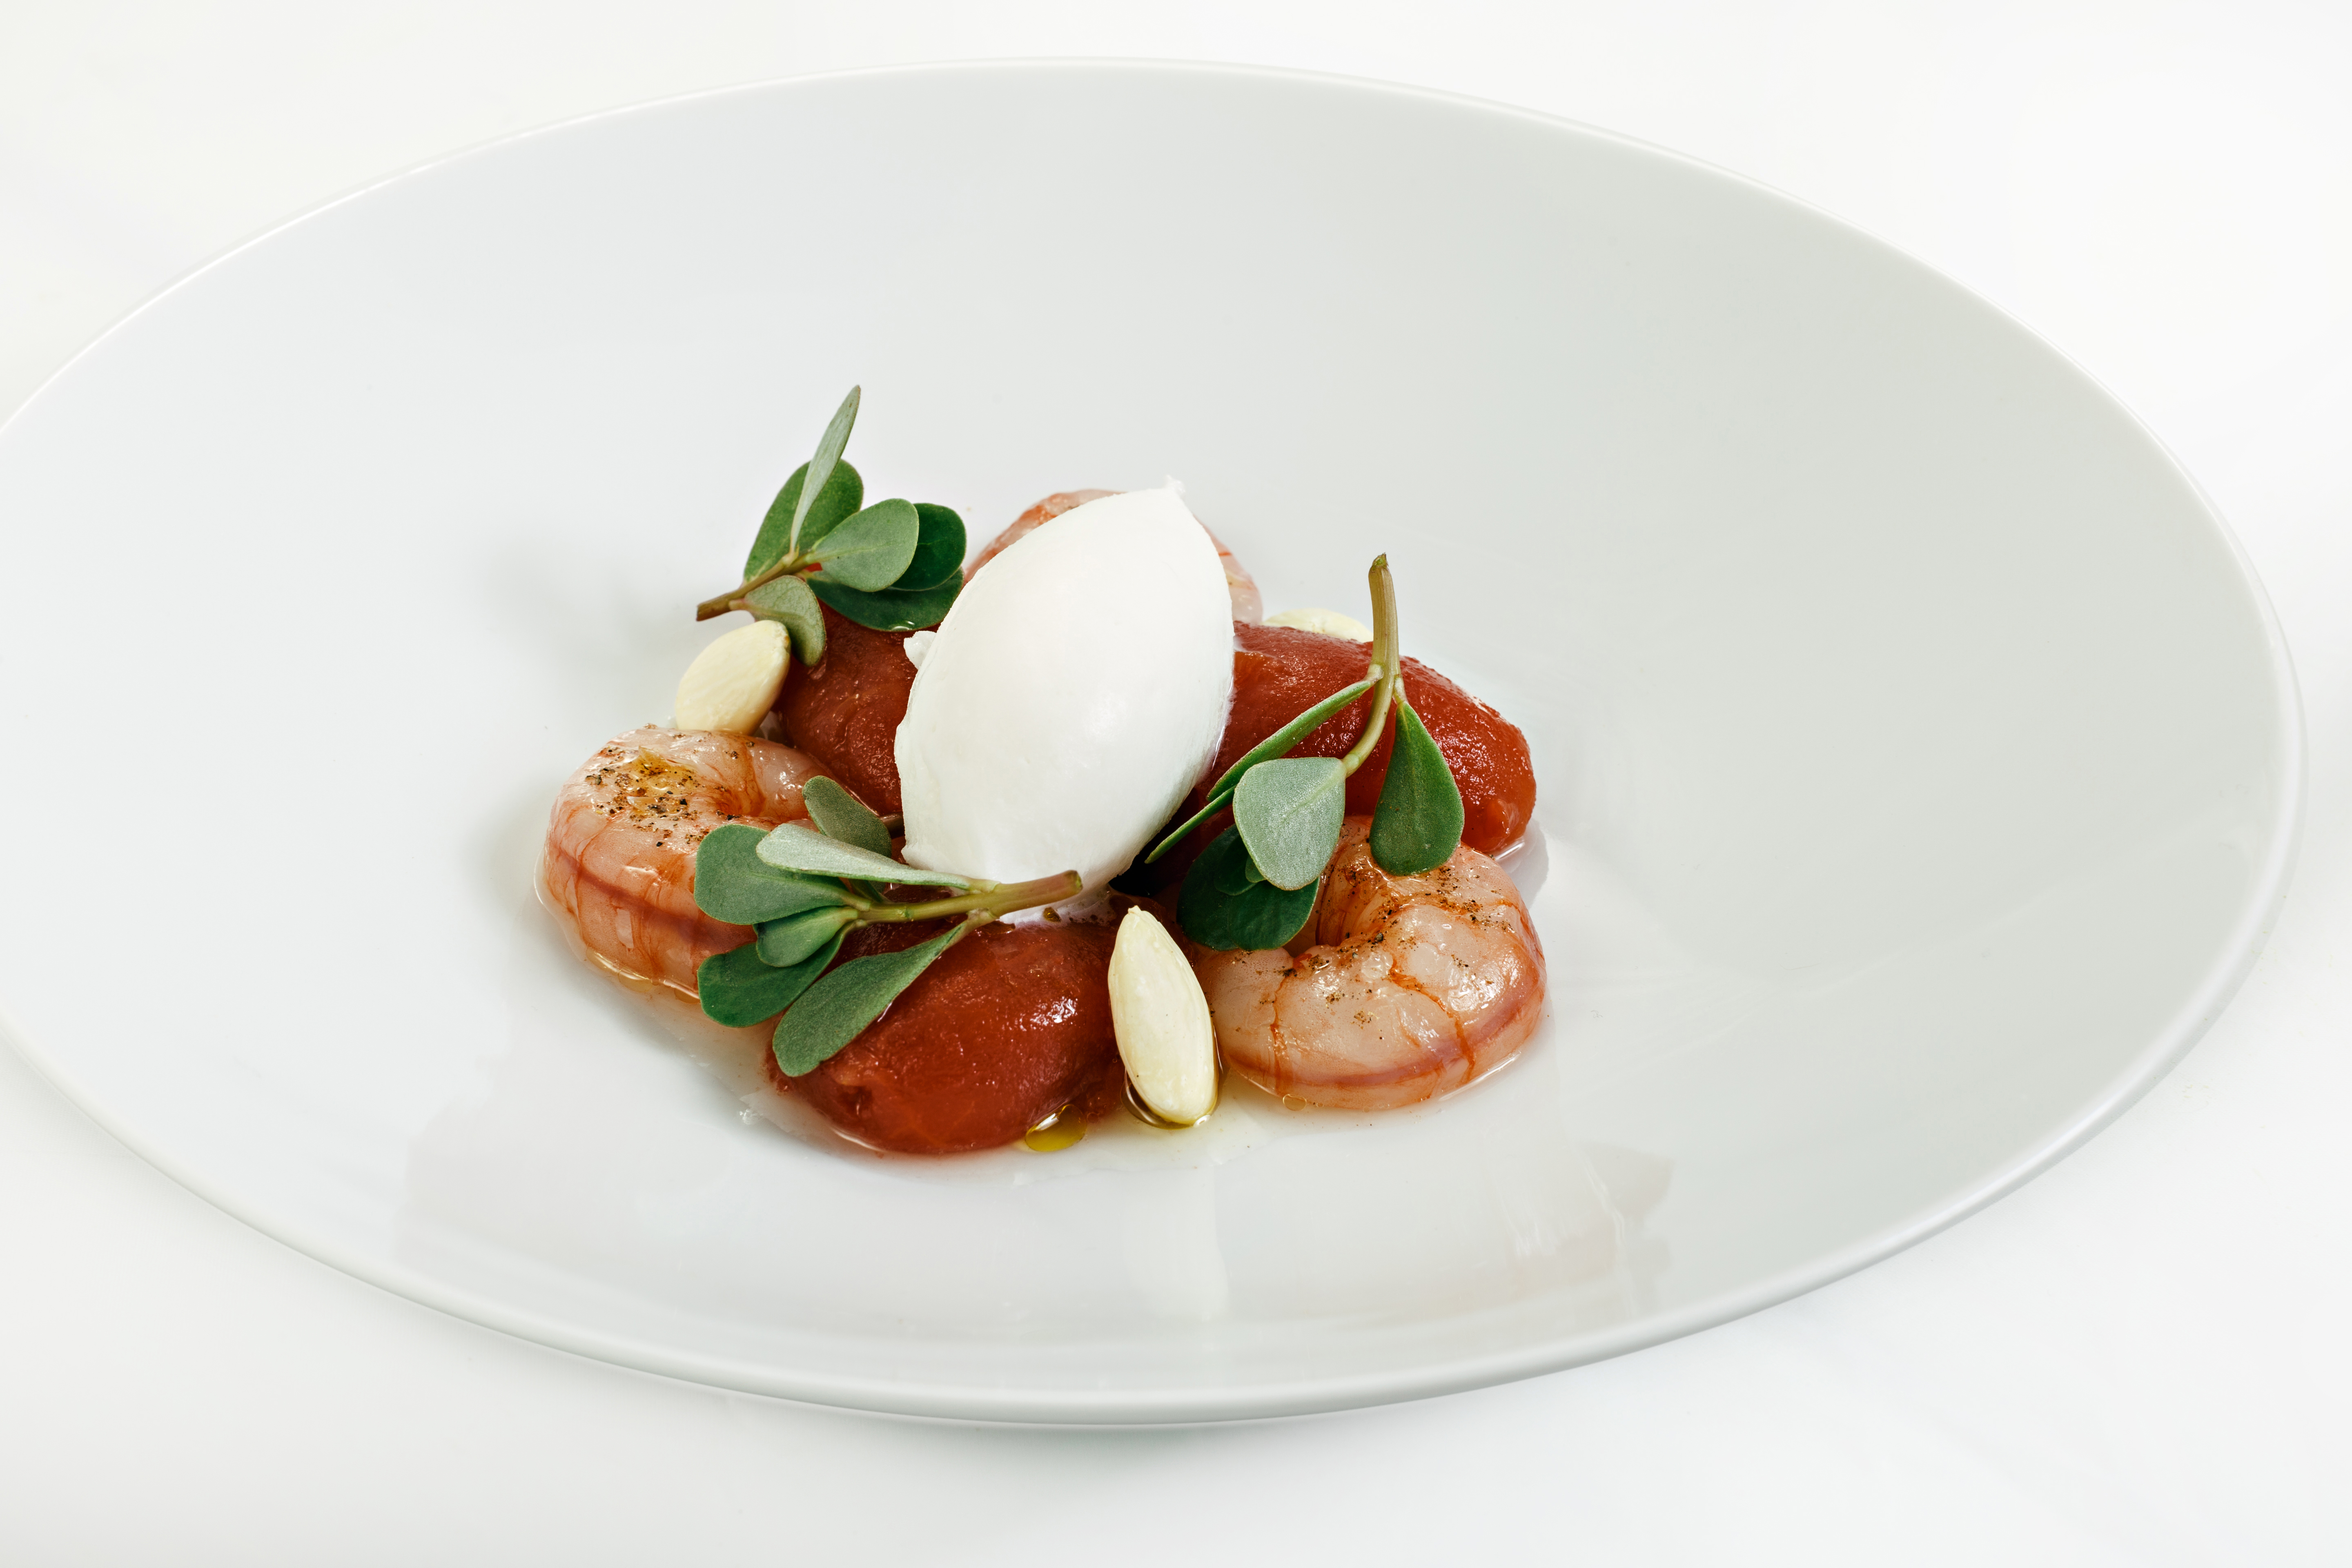 Gaudeix d'una Experiència Gourmet allotjant-te amb nosaltres i descobreix el nostre menú amb Estrella Michelin